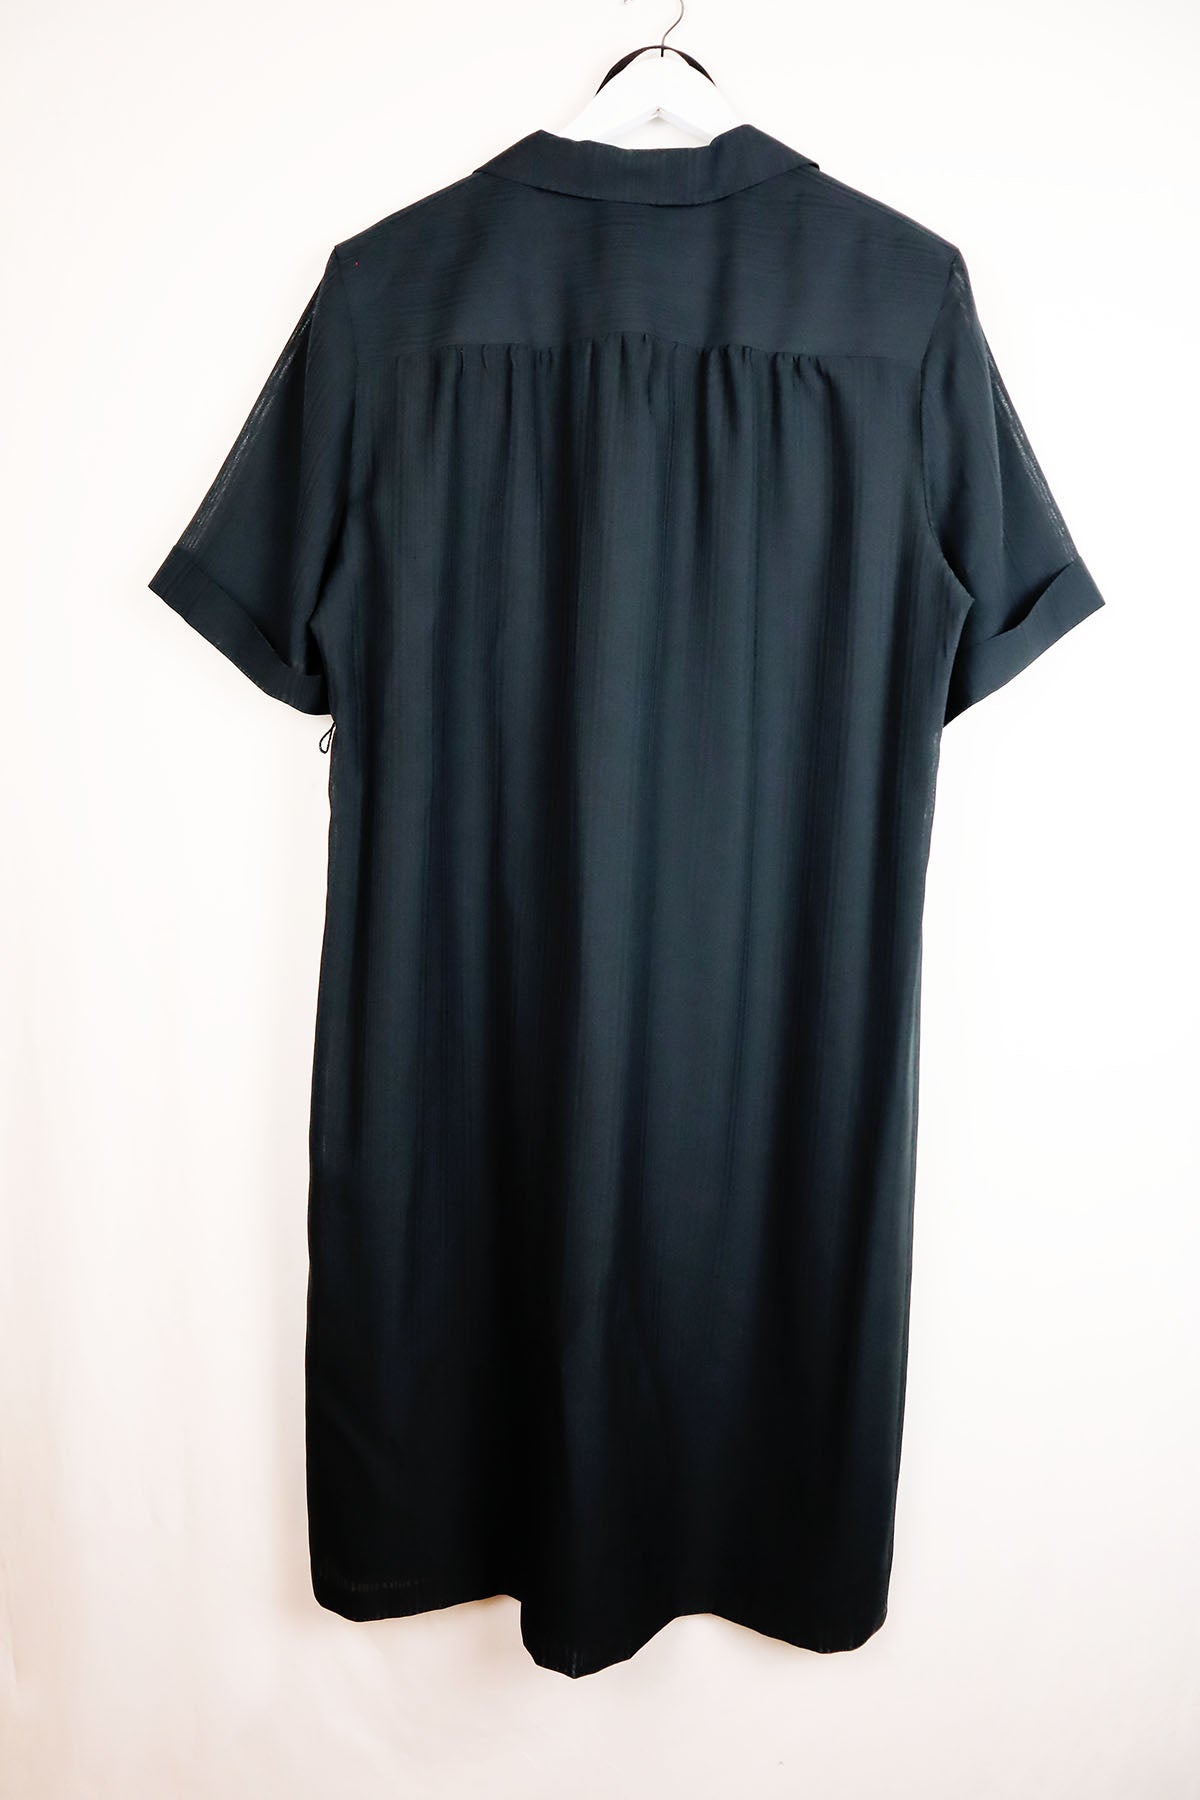 Hemdblusen-Kleid Vintage Schwarz ( Gr. L/XL )